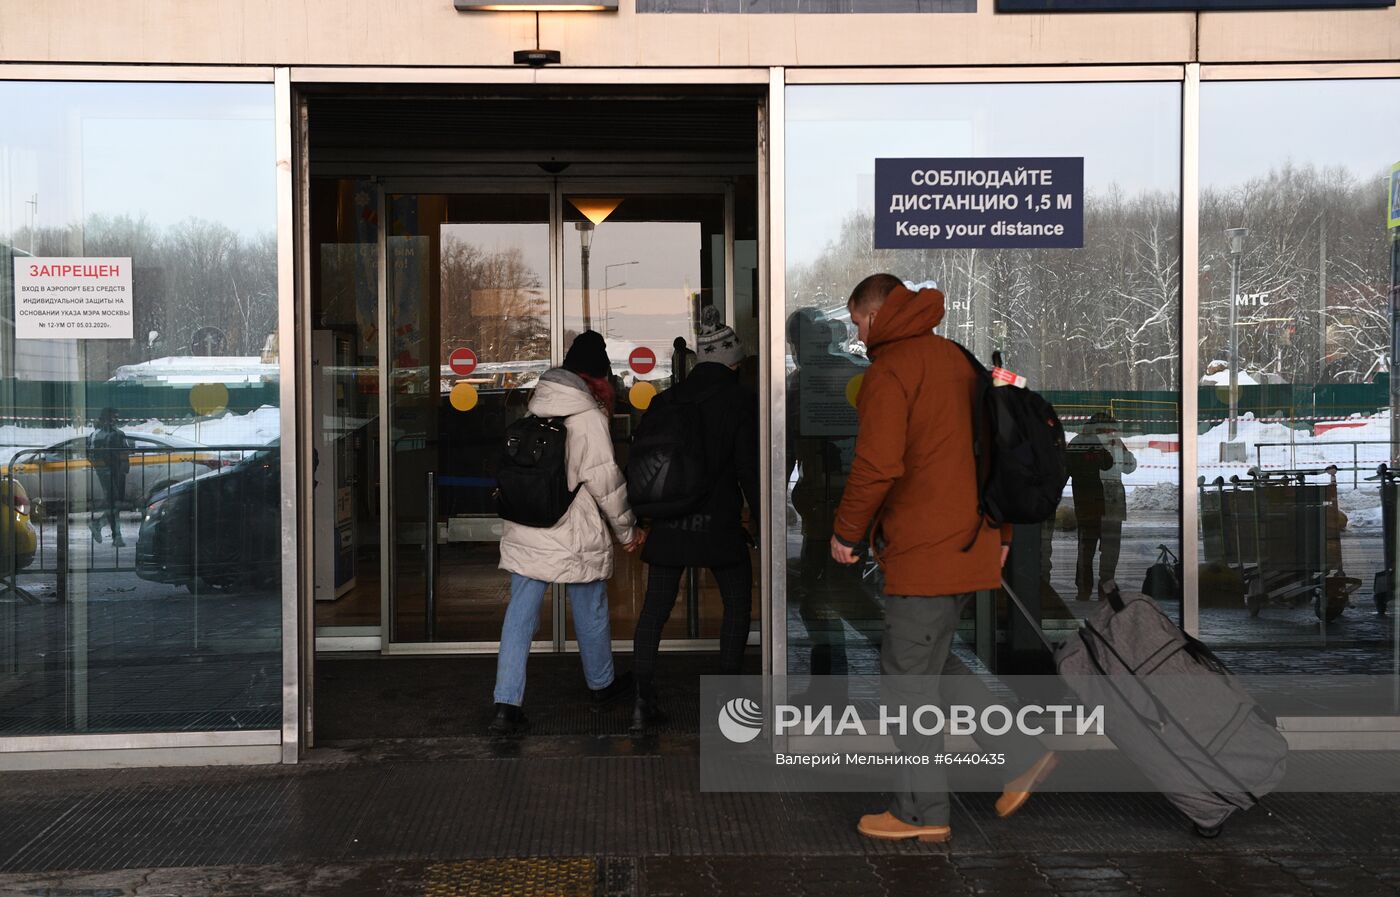 Аэропорт Внуково, куда должен прилететь А. Навальный